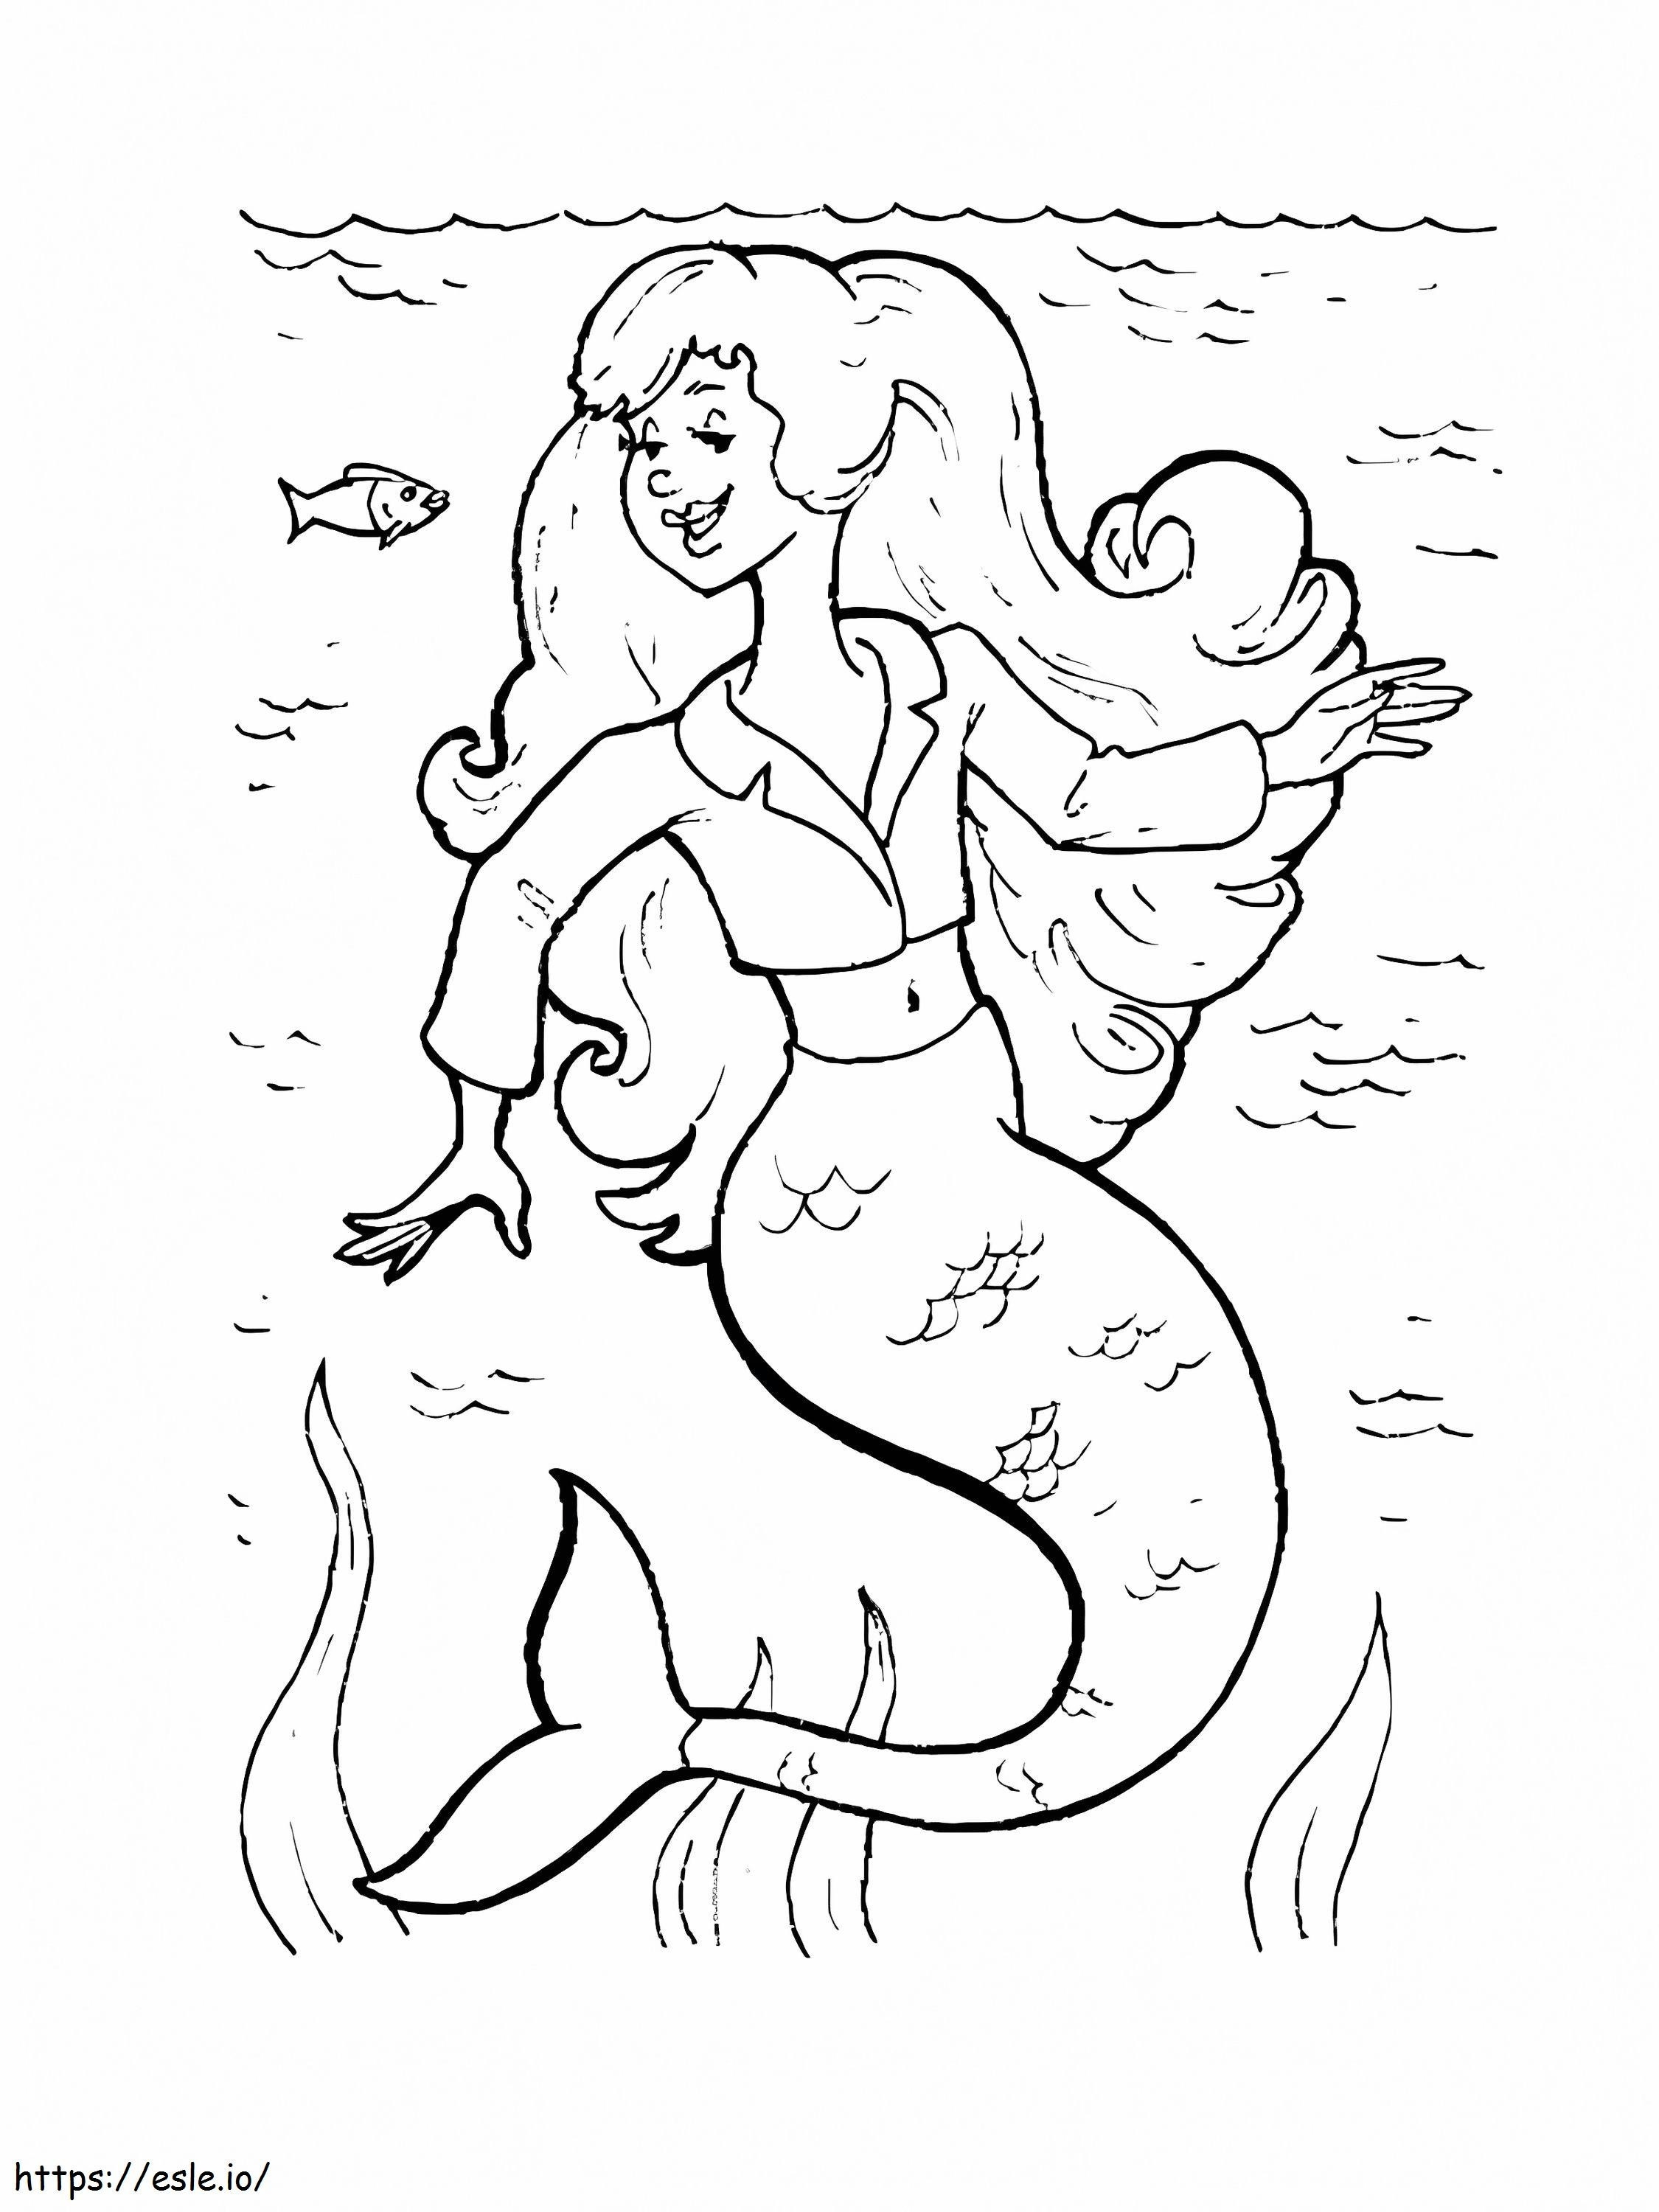 Meerjungfrau für Mädchen ausmalbilder